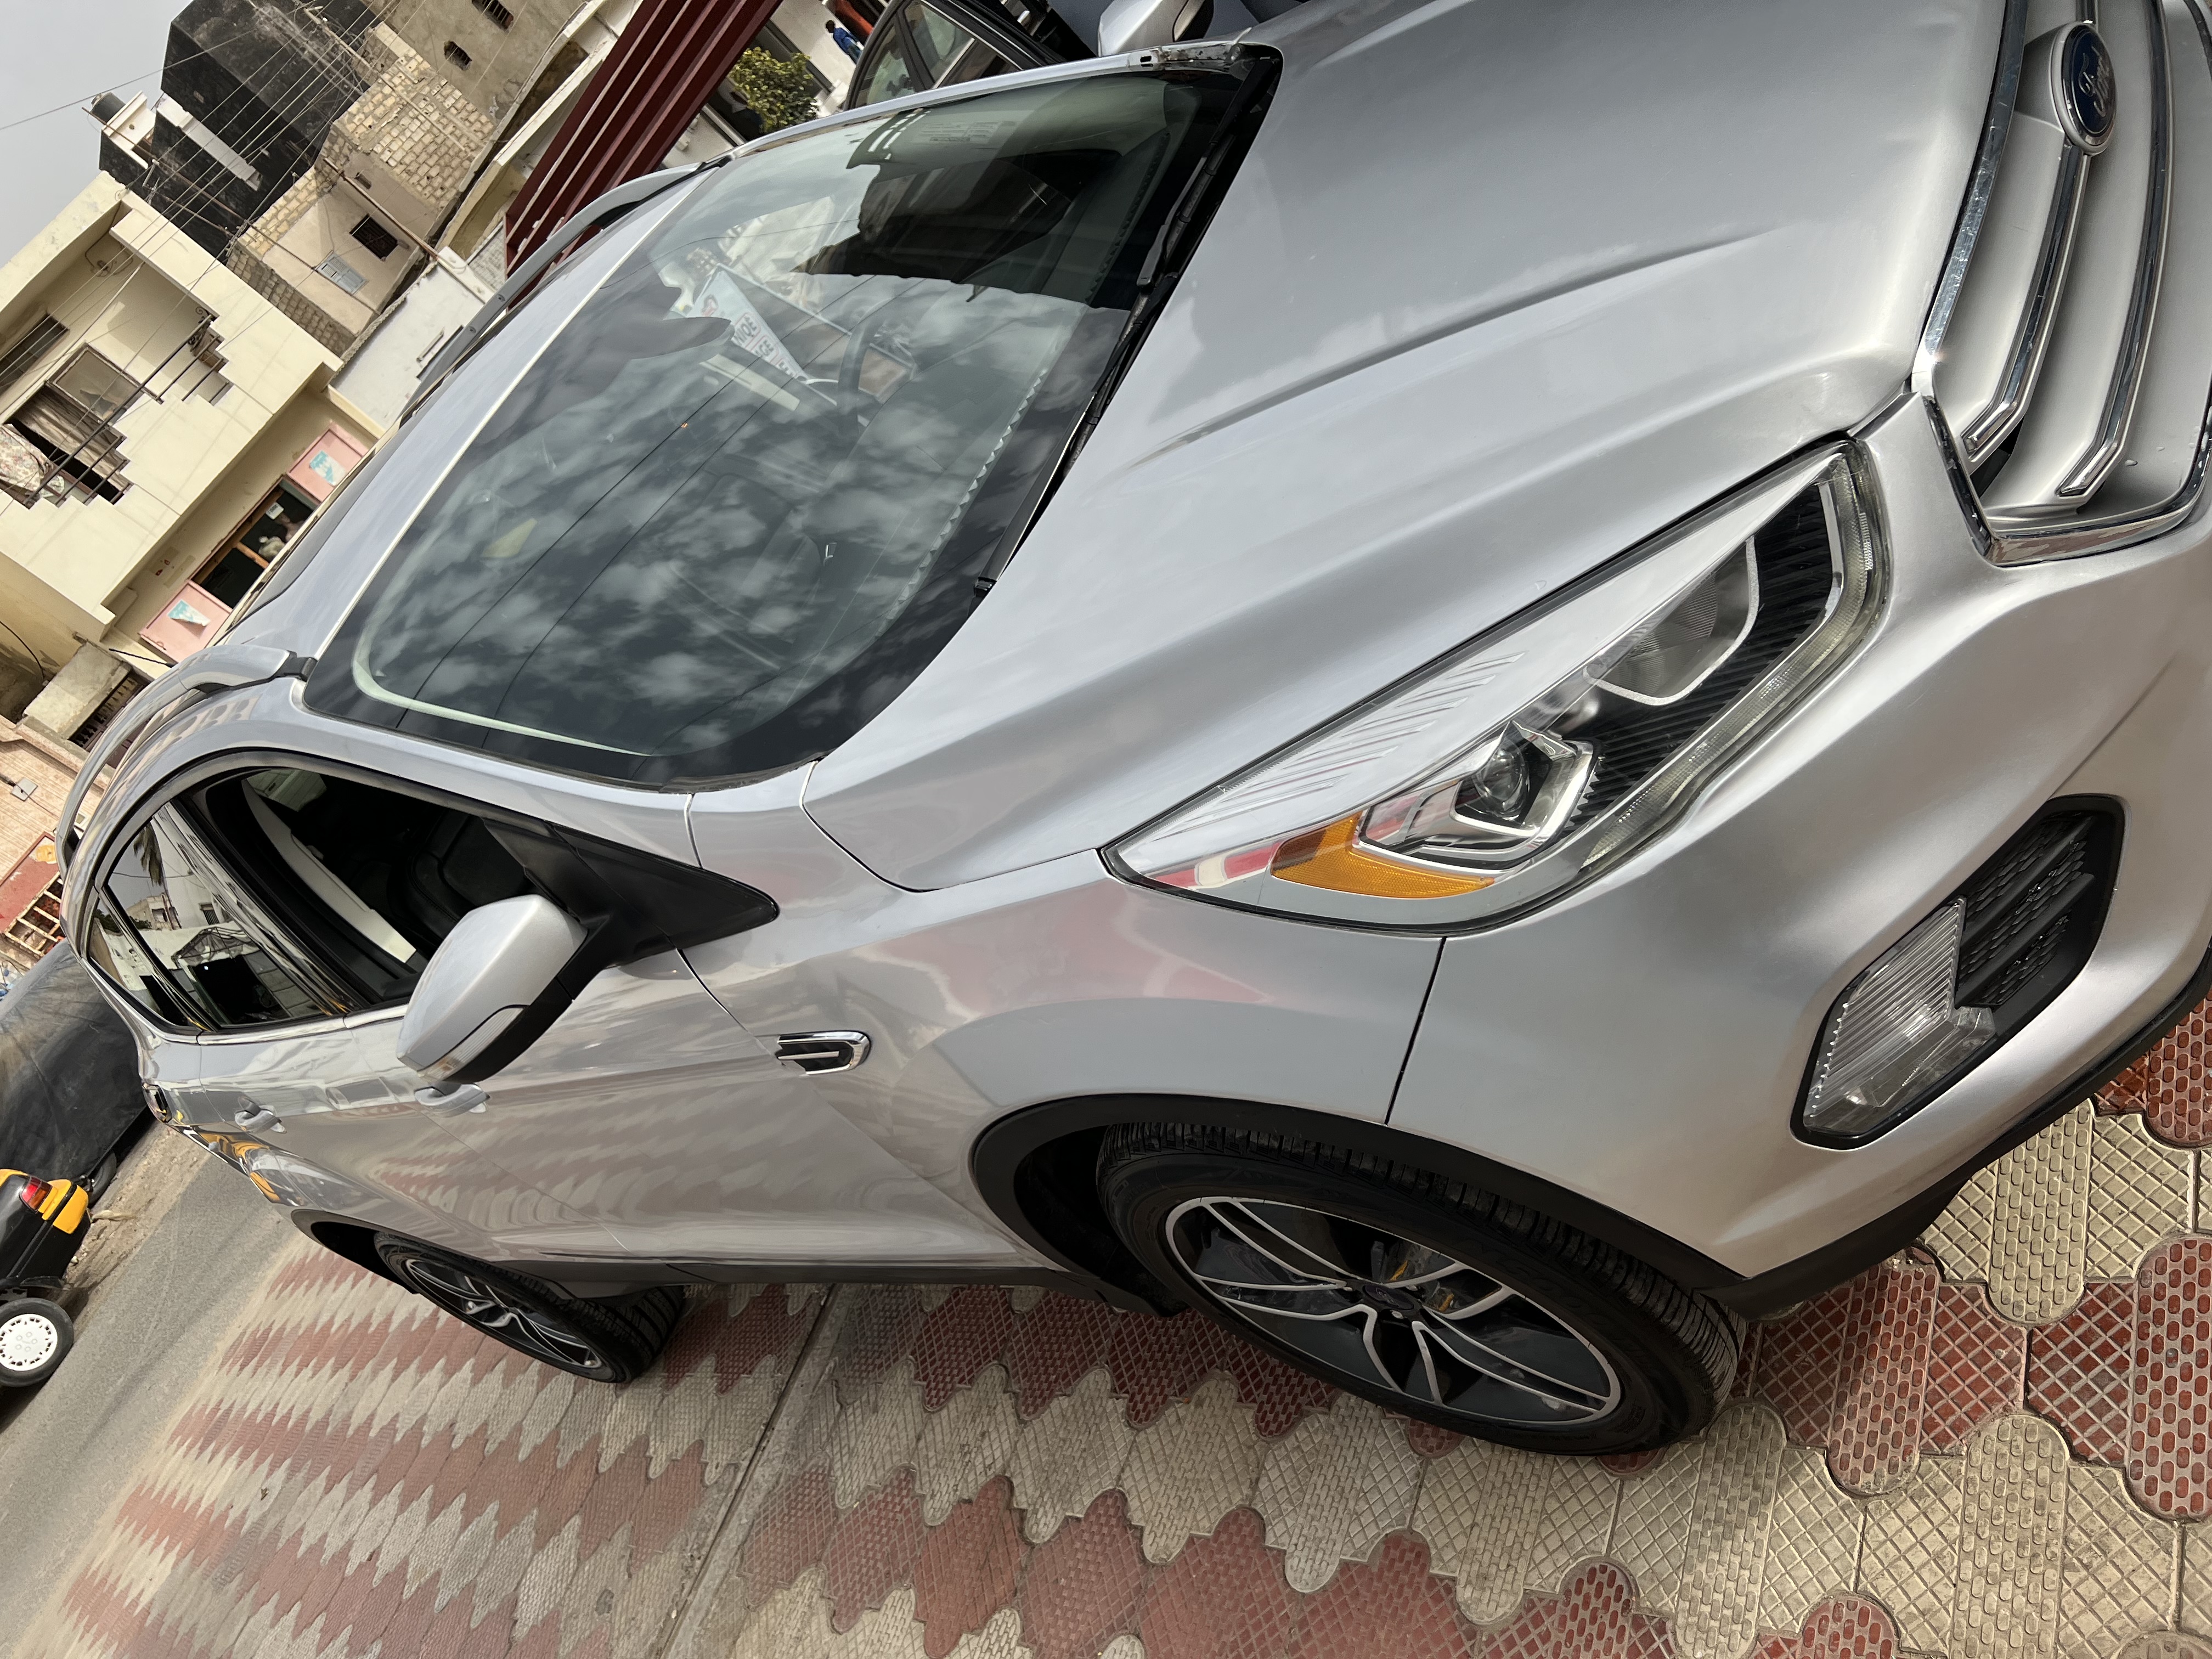 Ford Escape titanium 2017 Ford Escape titanium 2017 ( 4WD) full option nouveau model intérieur cuir noir très propre grand écran Sony double toit panoramique commande au volant vitre électrique automatique essence kilométrage 51miles venant des usa déjà dédouané